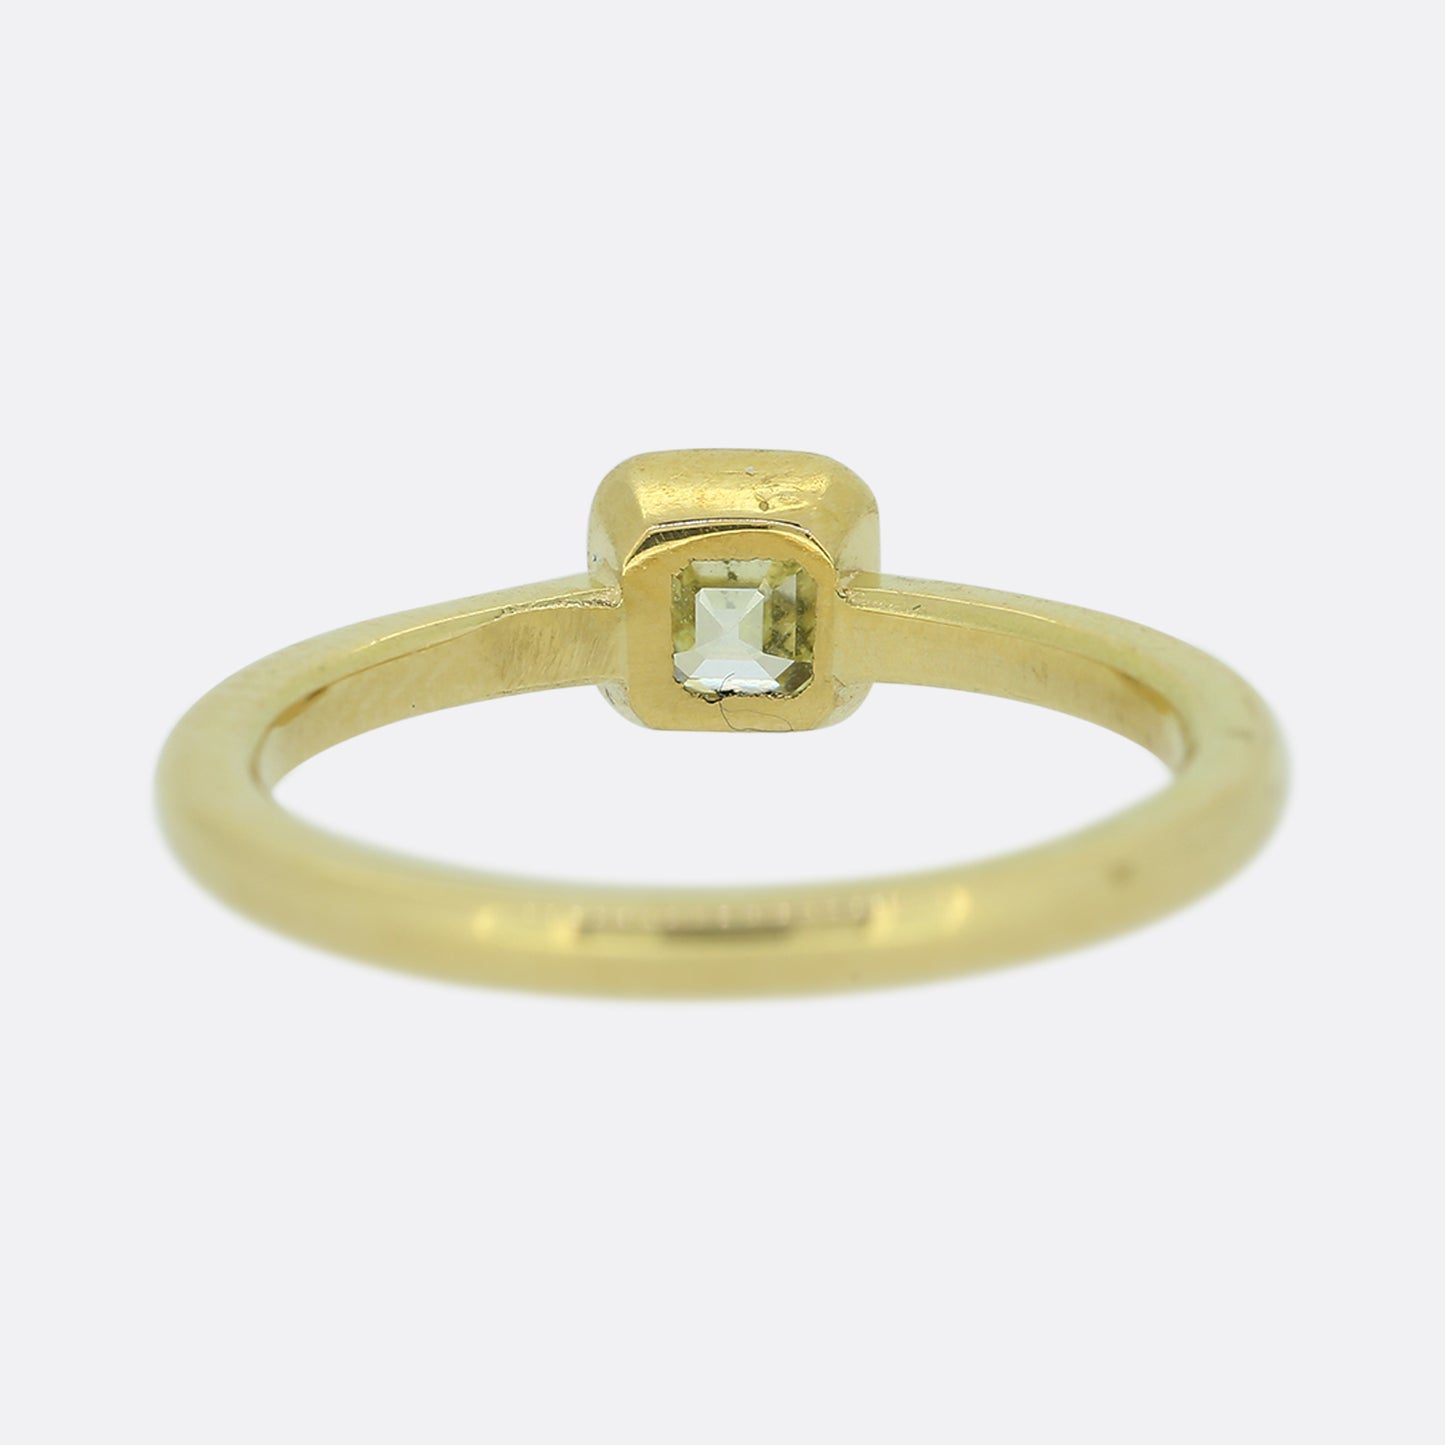 Contemporary 0.45 Carat Asscher Cut Yellow Diamond Ring